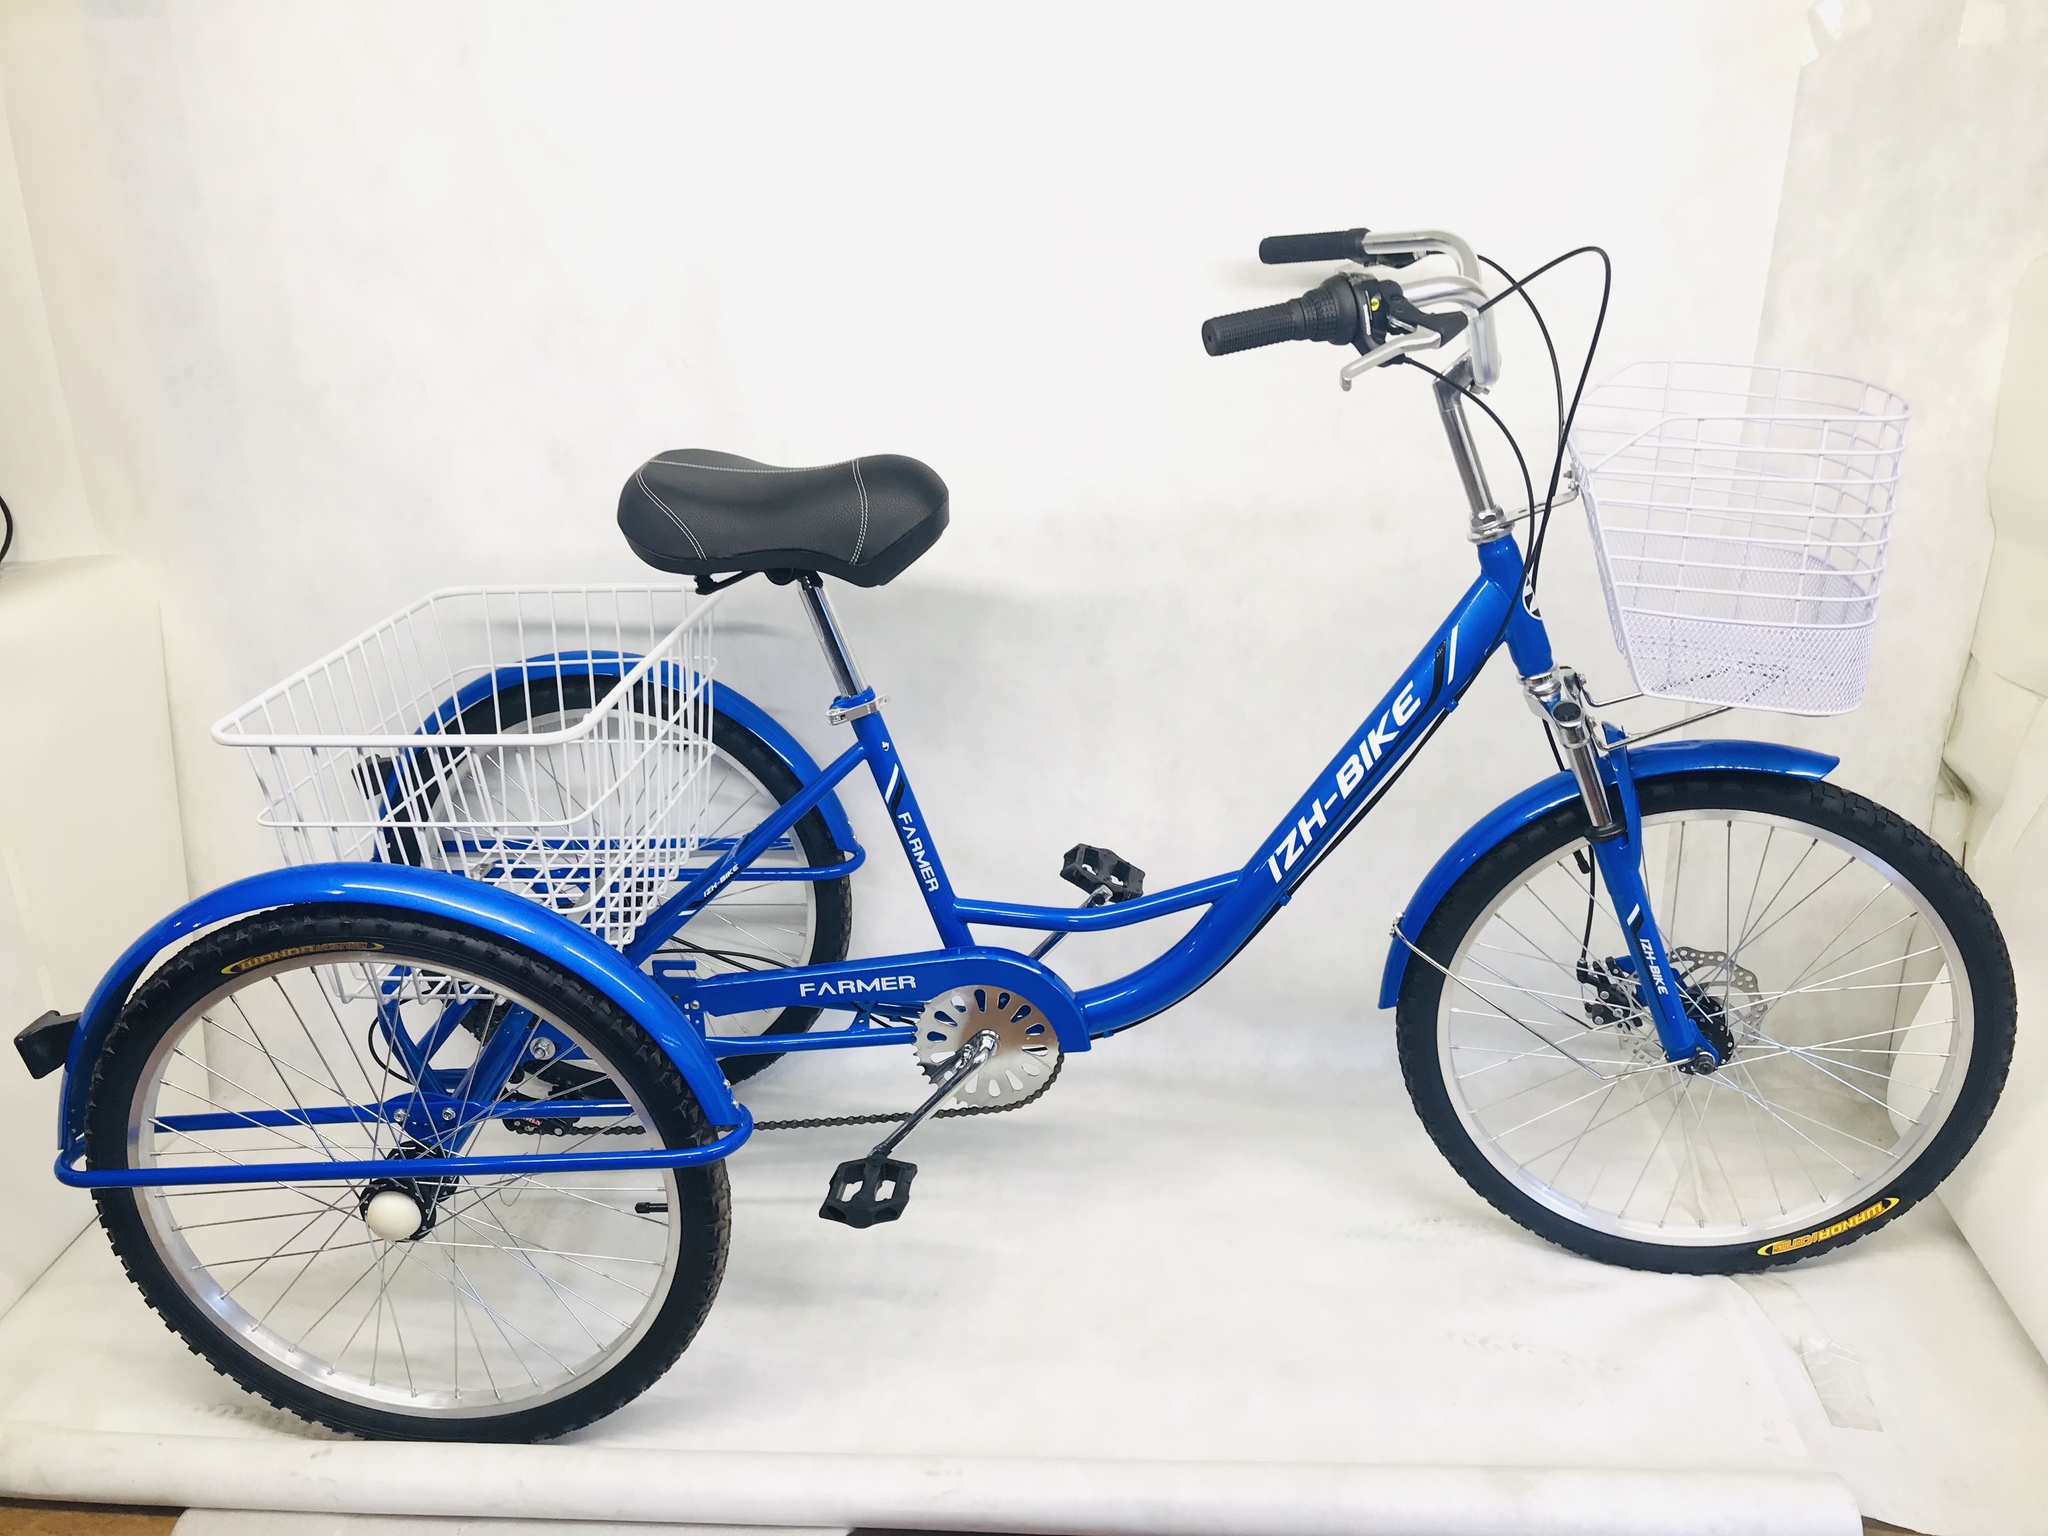 Купить велосипед трицикл грузовой по низкой цене на бородино-молодежка.рф